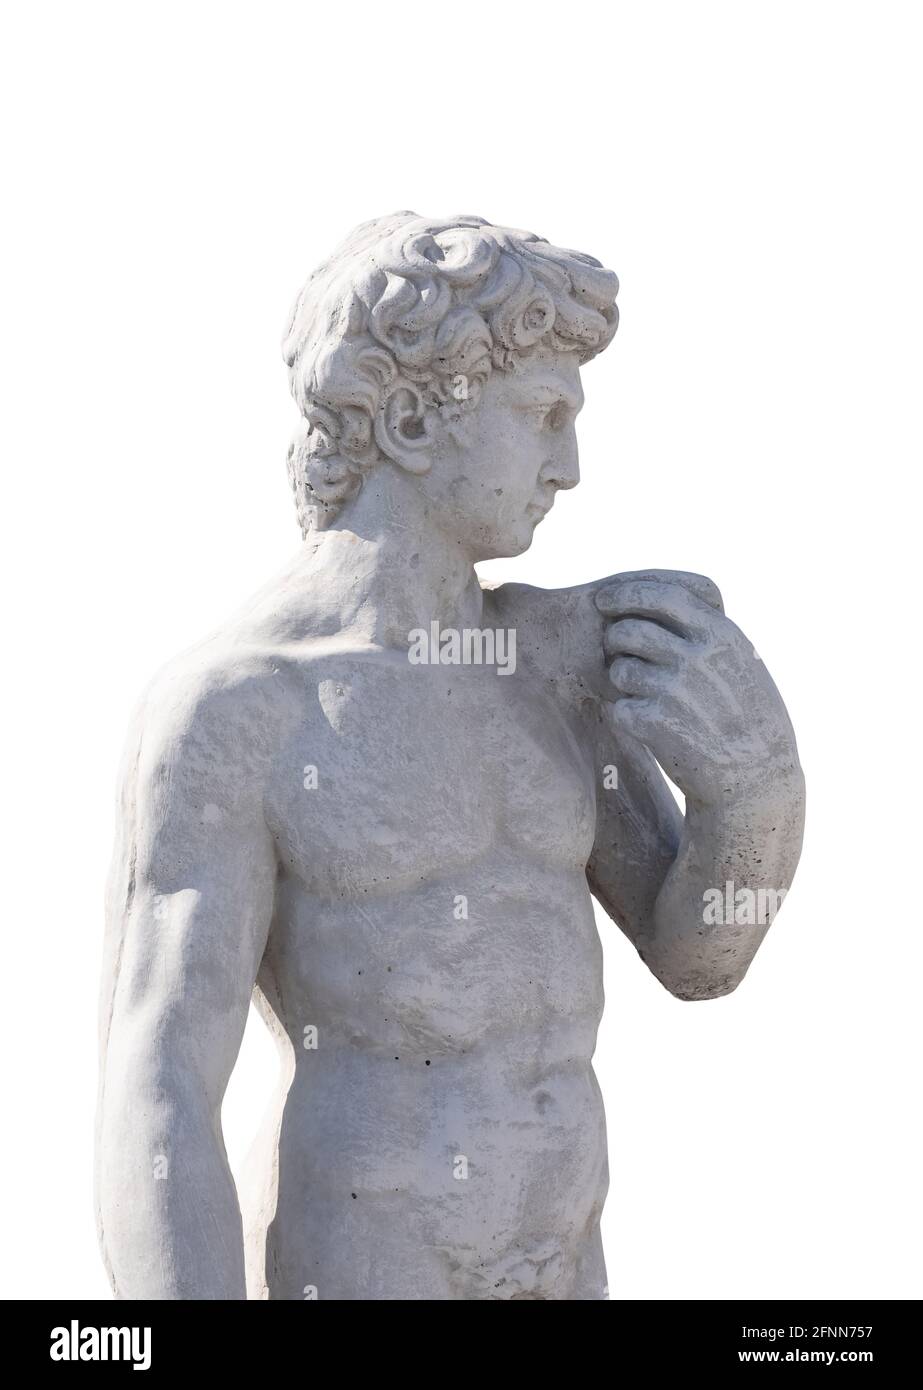 Sculpture en pierre de la partie supérieure de l'homme antique sur fond blanc Banque D'Images